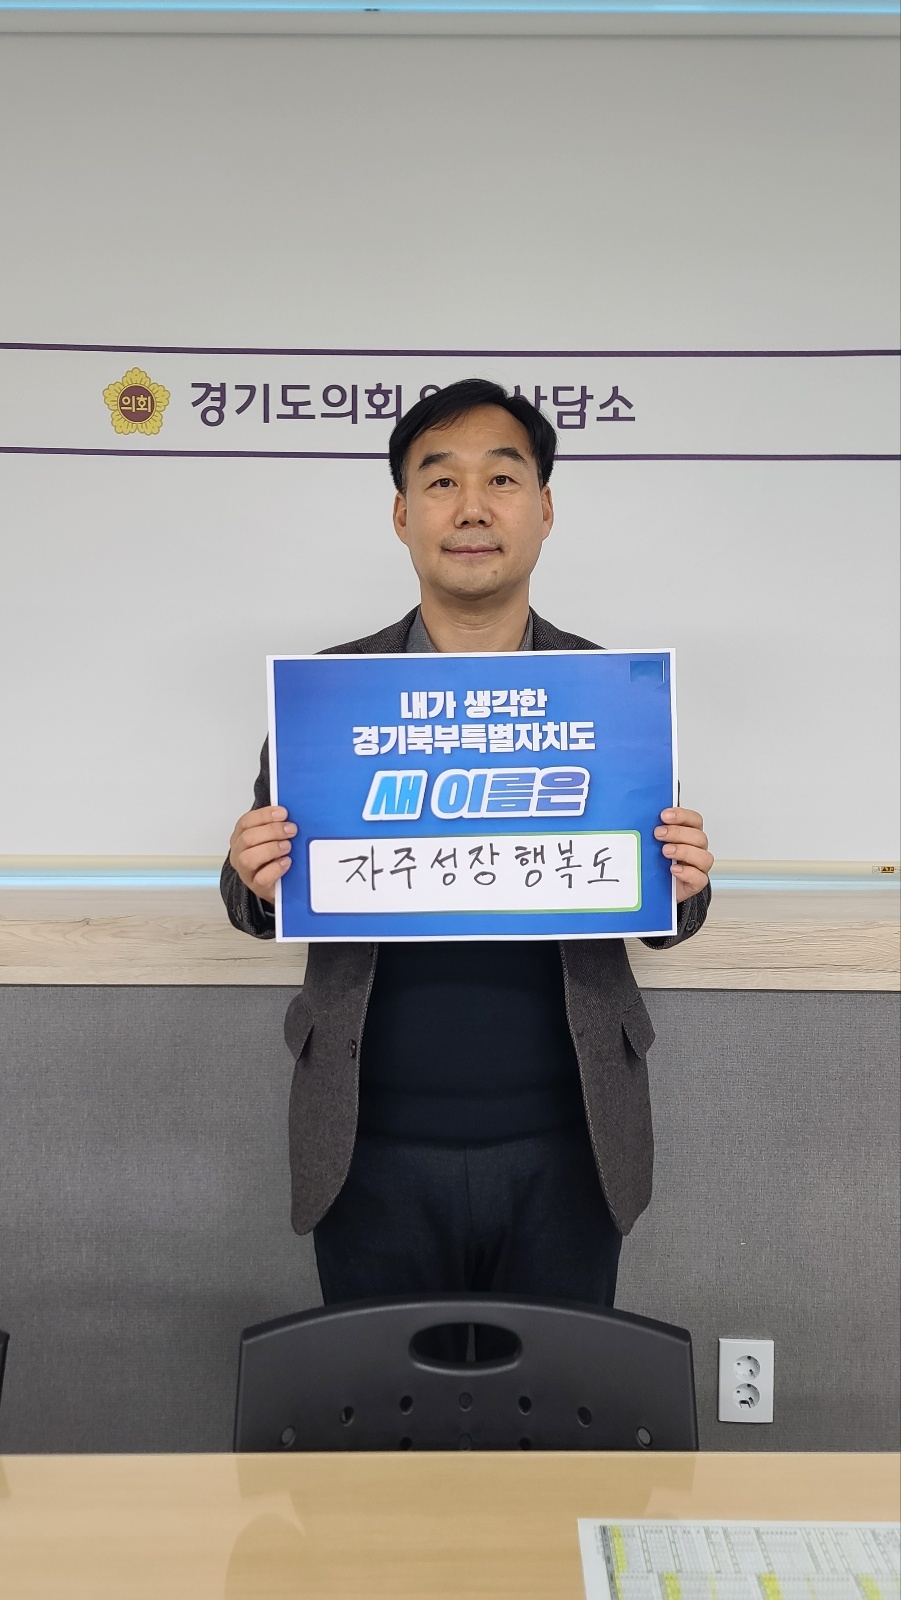 경기도의회 윤종영 의원, 경기북부특별자치도 새이름 짓기 릴레이 캠페인 시작